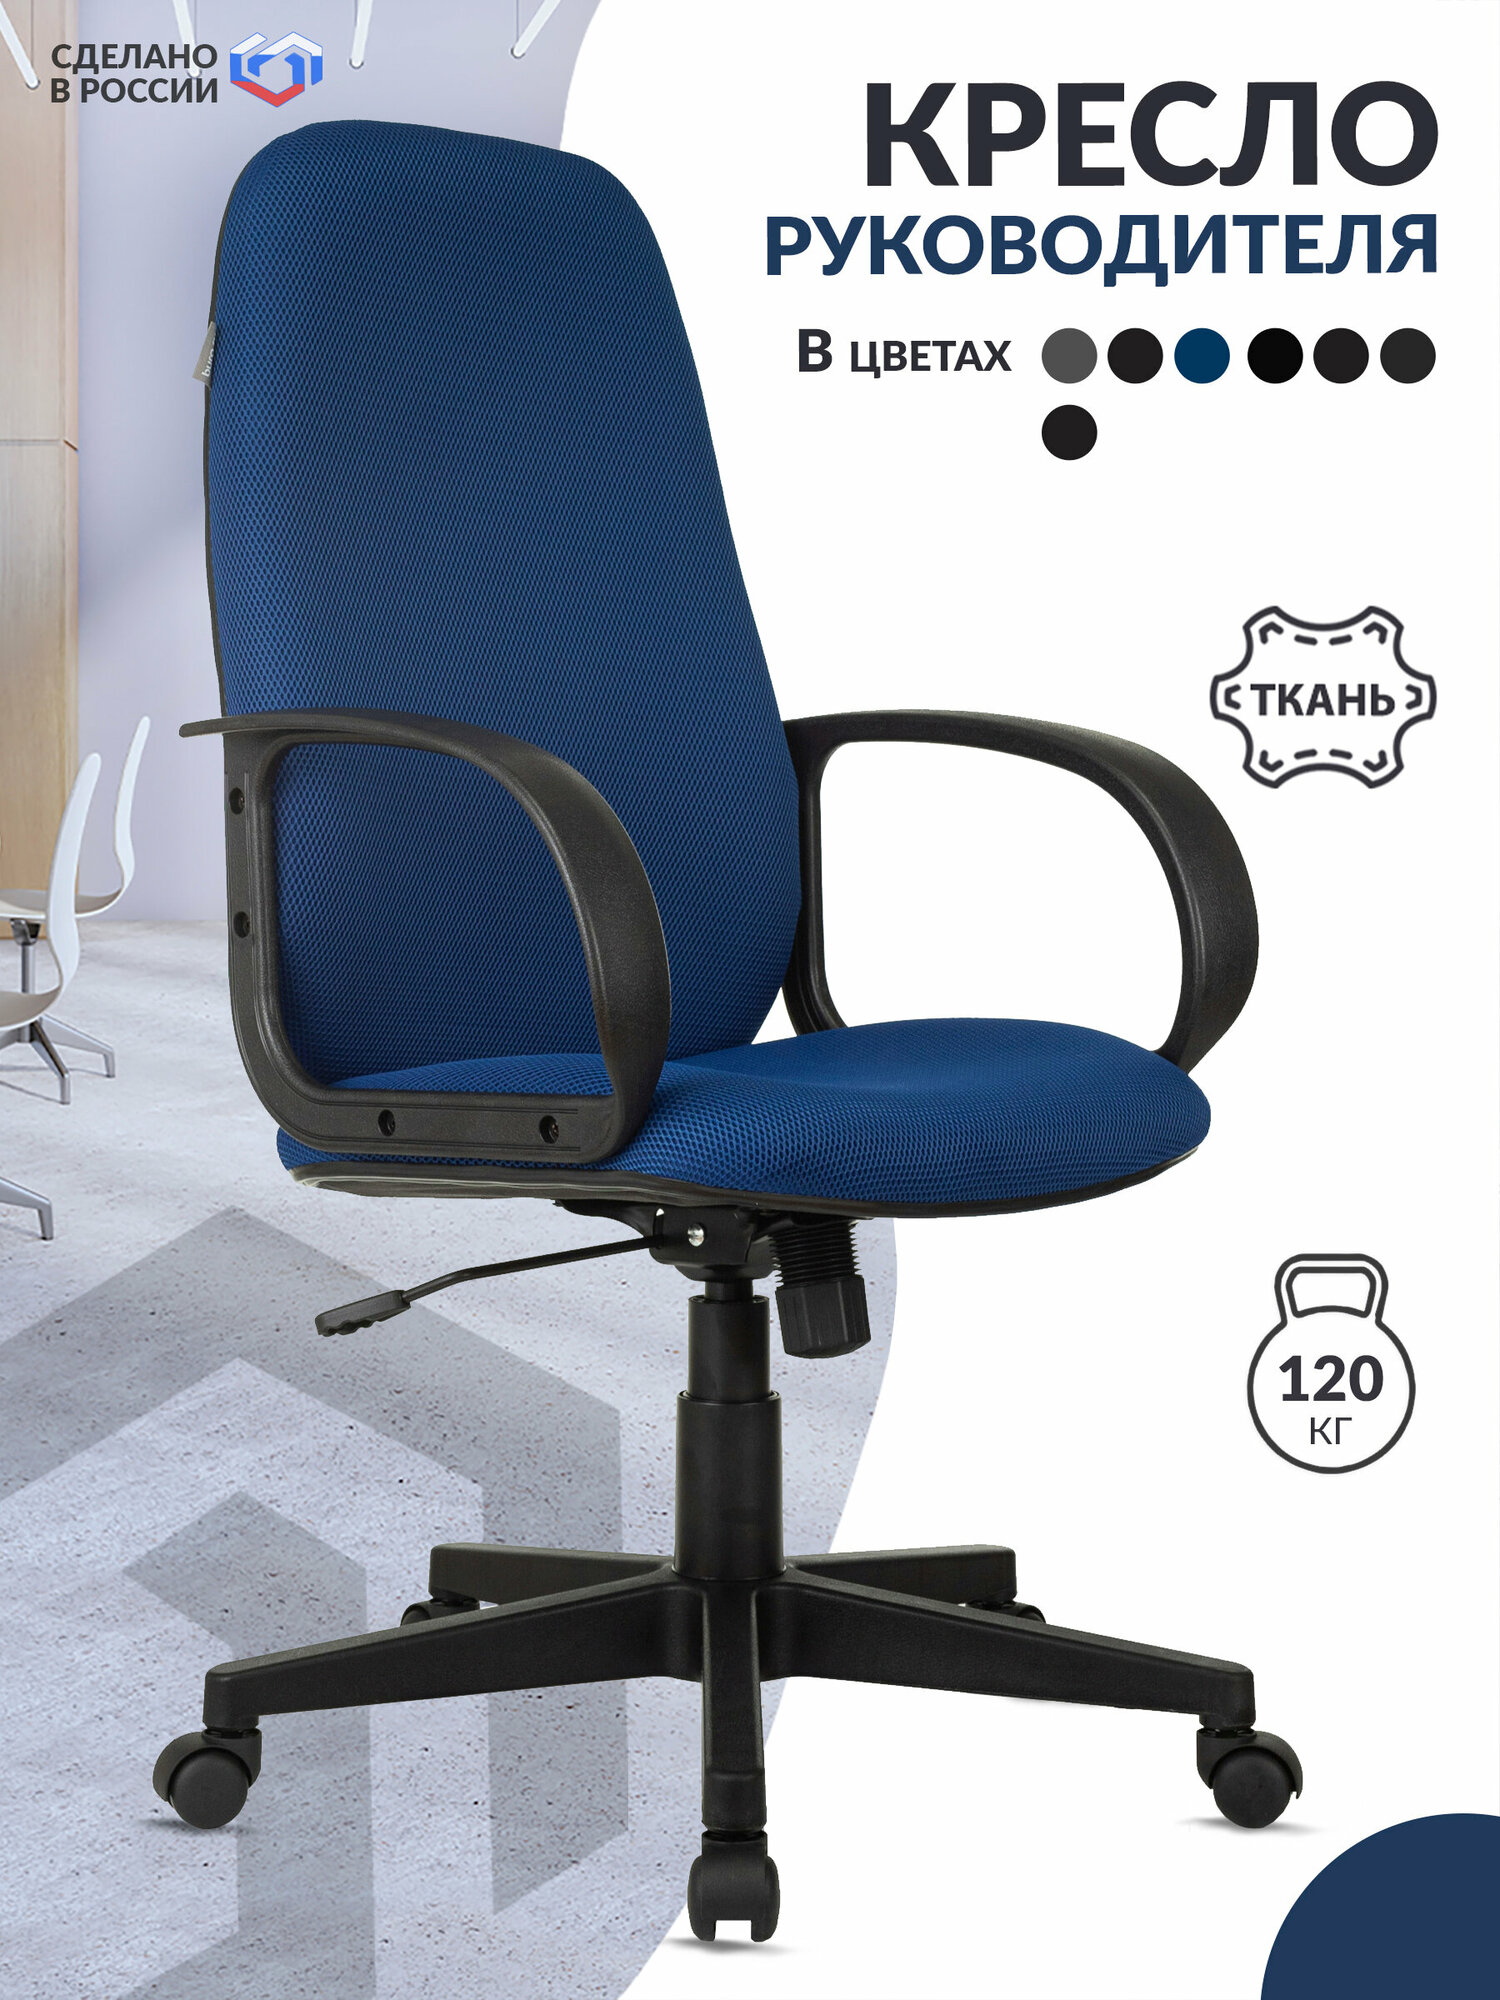 Кресло руководителя Ch-808AXSN синий TW-10 крестовина пластик / Компьютерное кресло для директора, начальника, менеджера